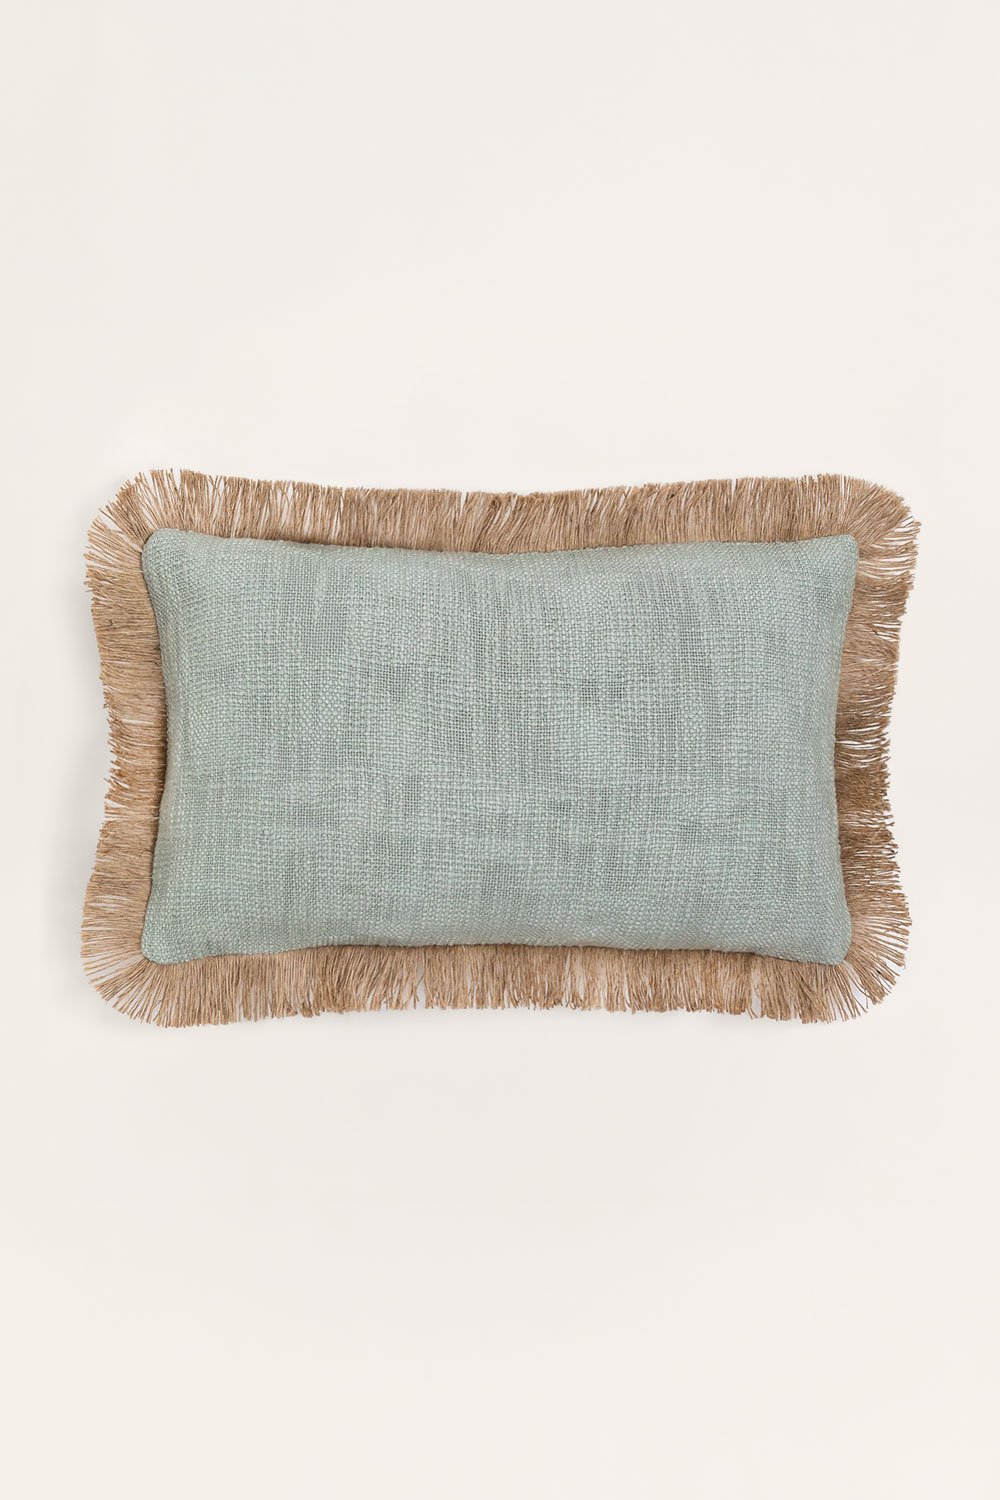 Almofada retangular de algodão (30x50 cm) Paraíba, imagem de galeria 1